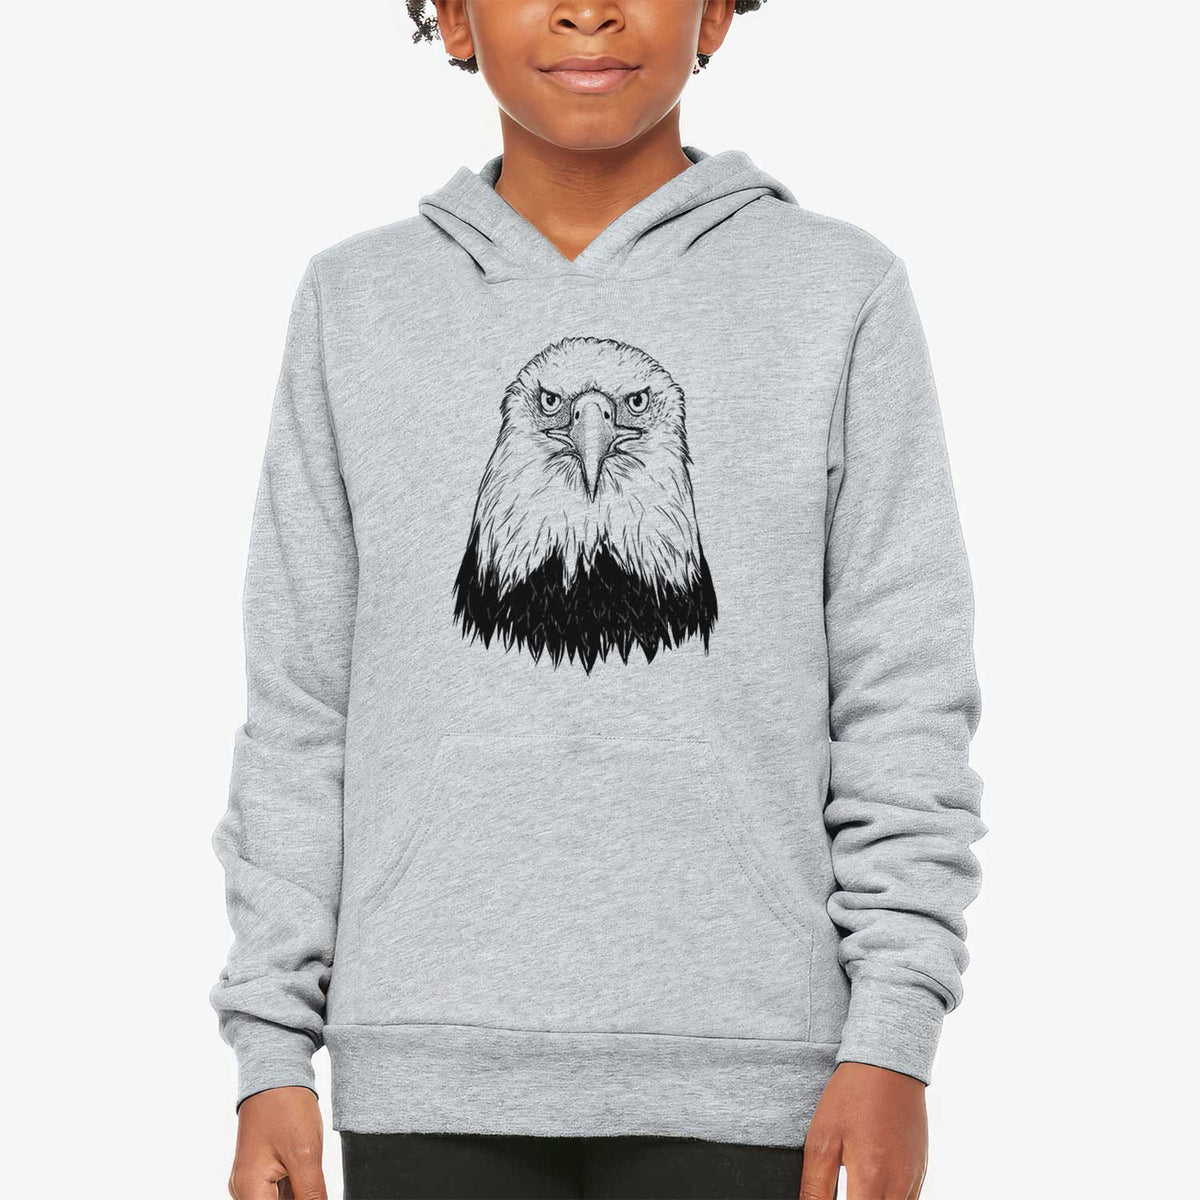 Haliaeetus Leucocephalus - American Bald Eagle - Youth Hoodie Sweatshirt